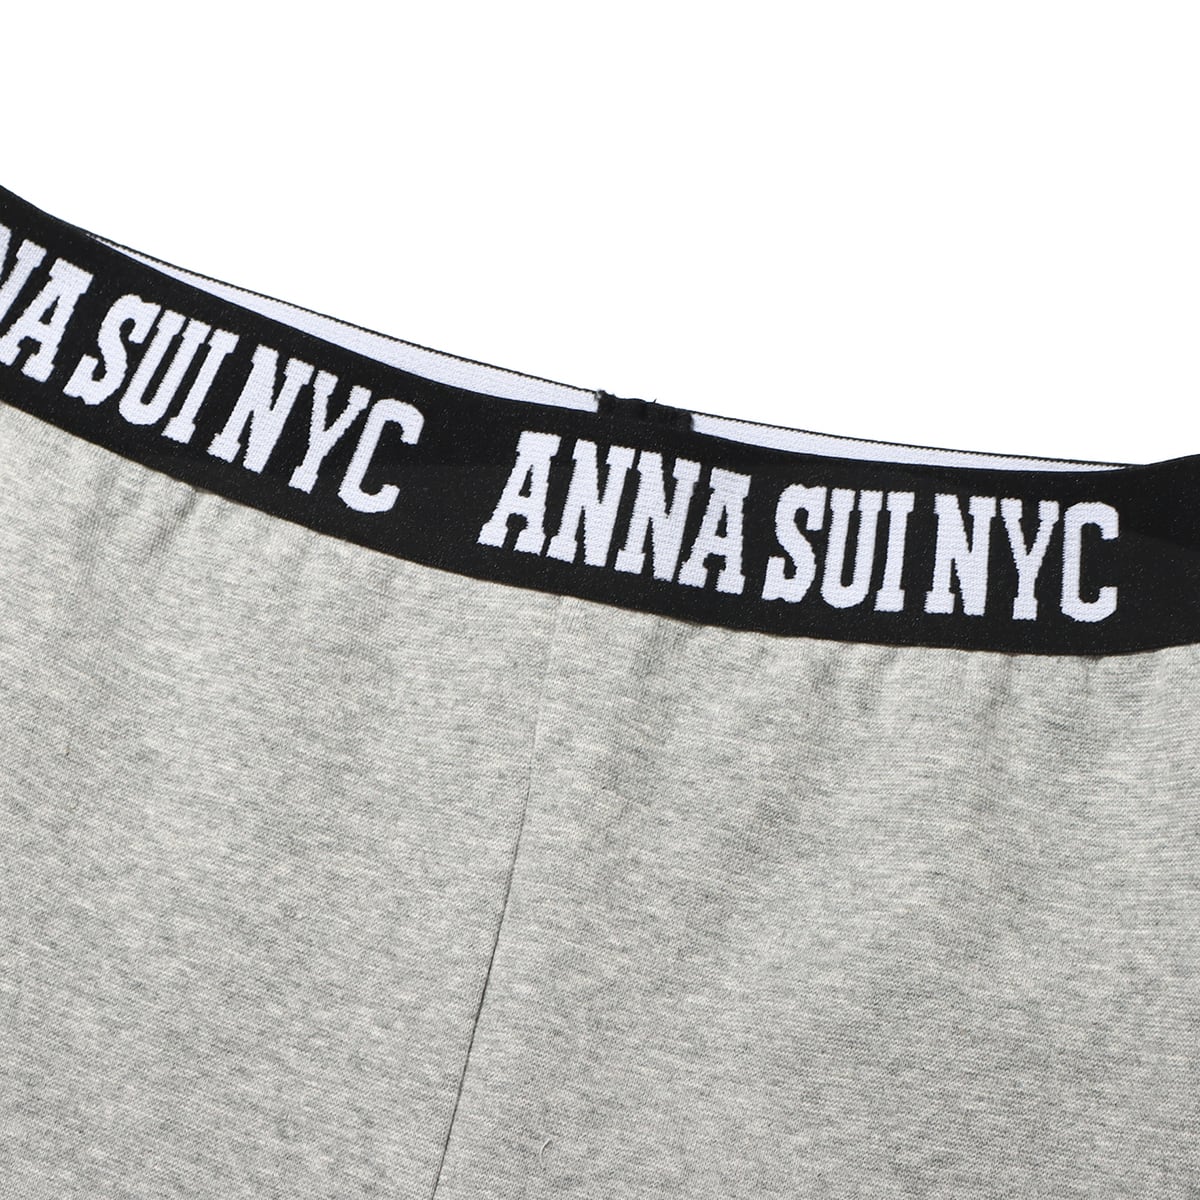 ANNA SUI NYC ロゴテープ インナーパンツ GRAY 22HO-I